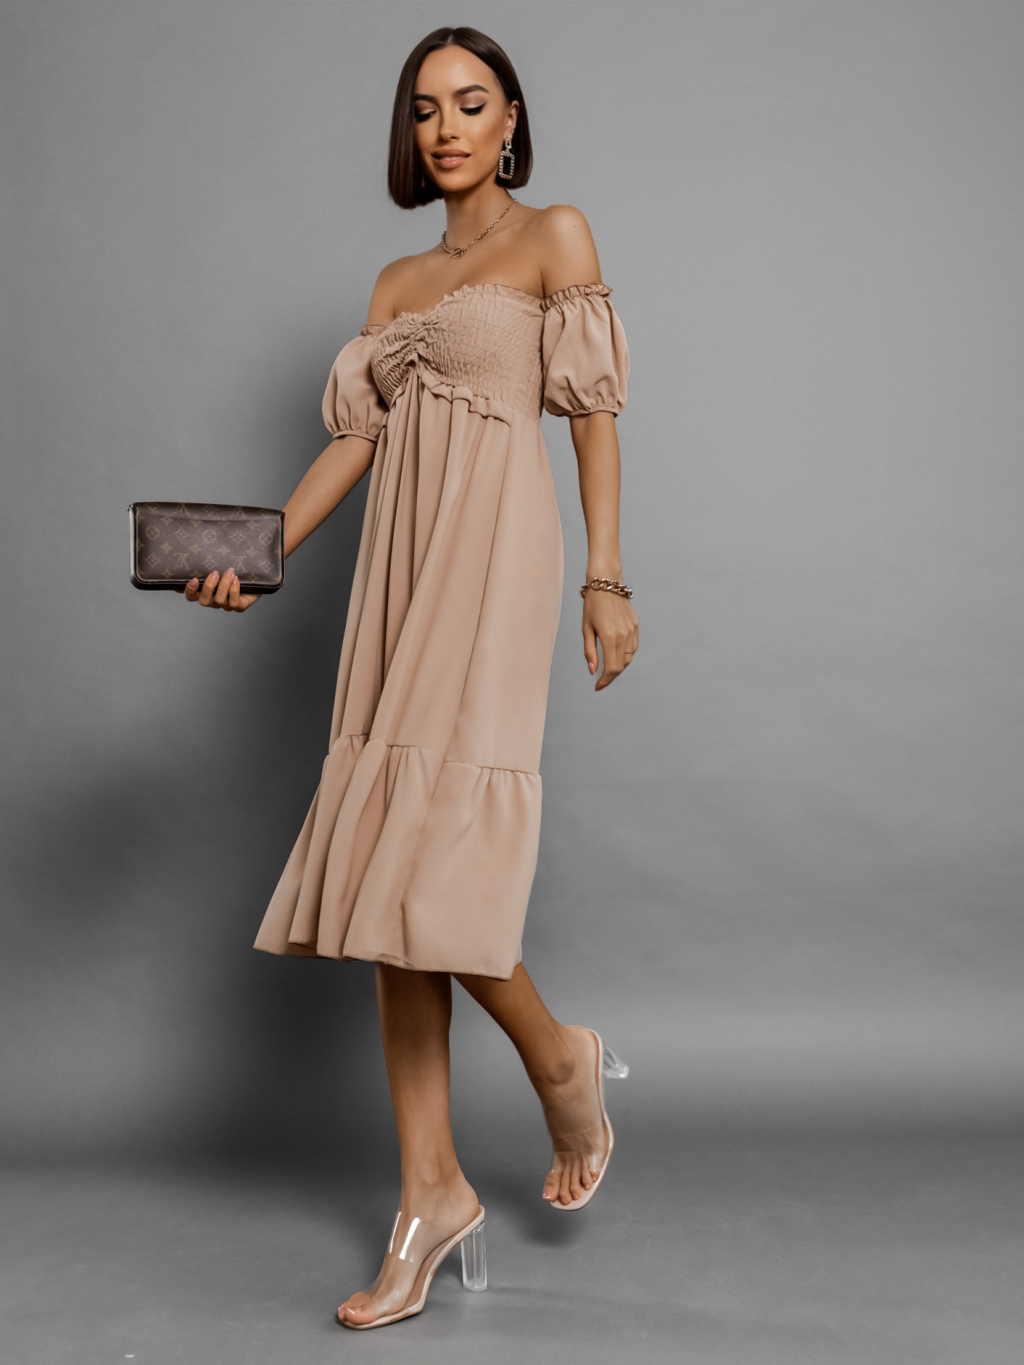 Hnedé elegantné šaty SOFTNESS s volánikmi